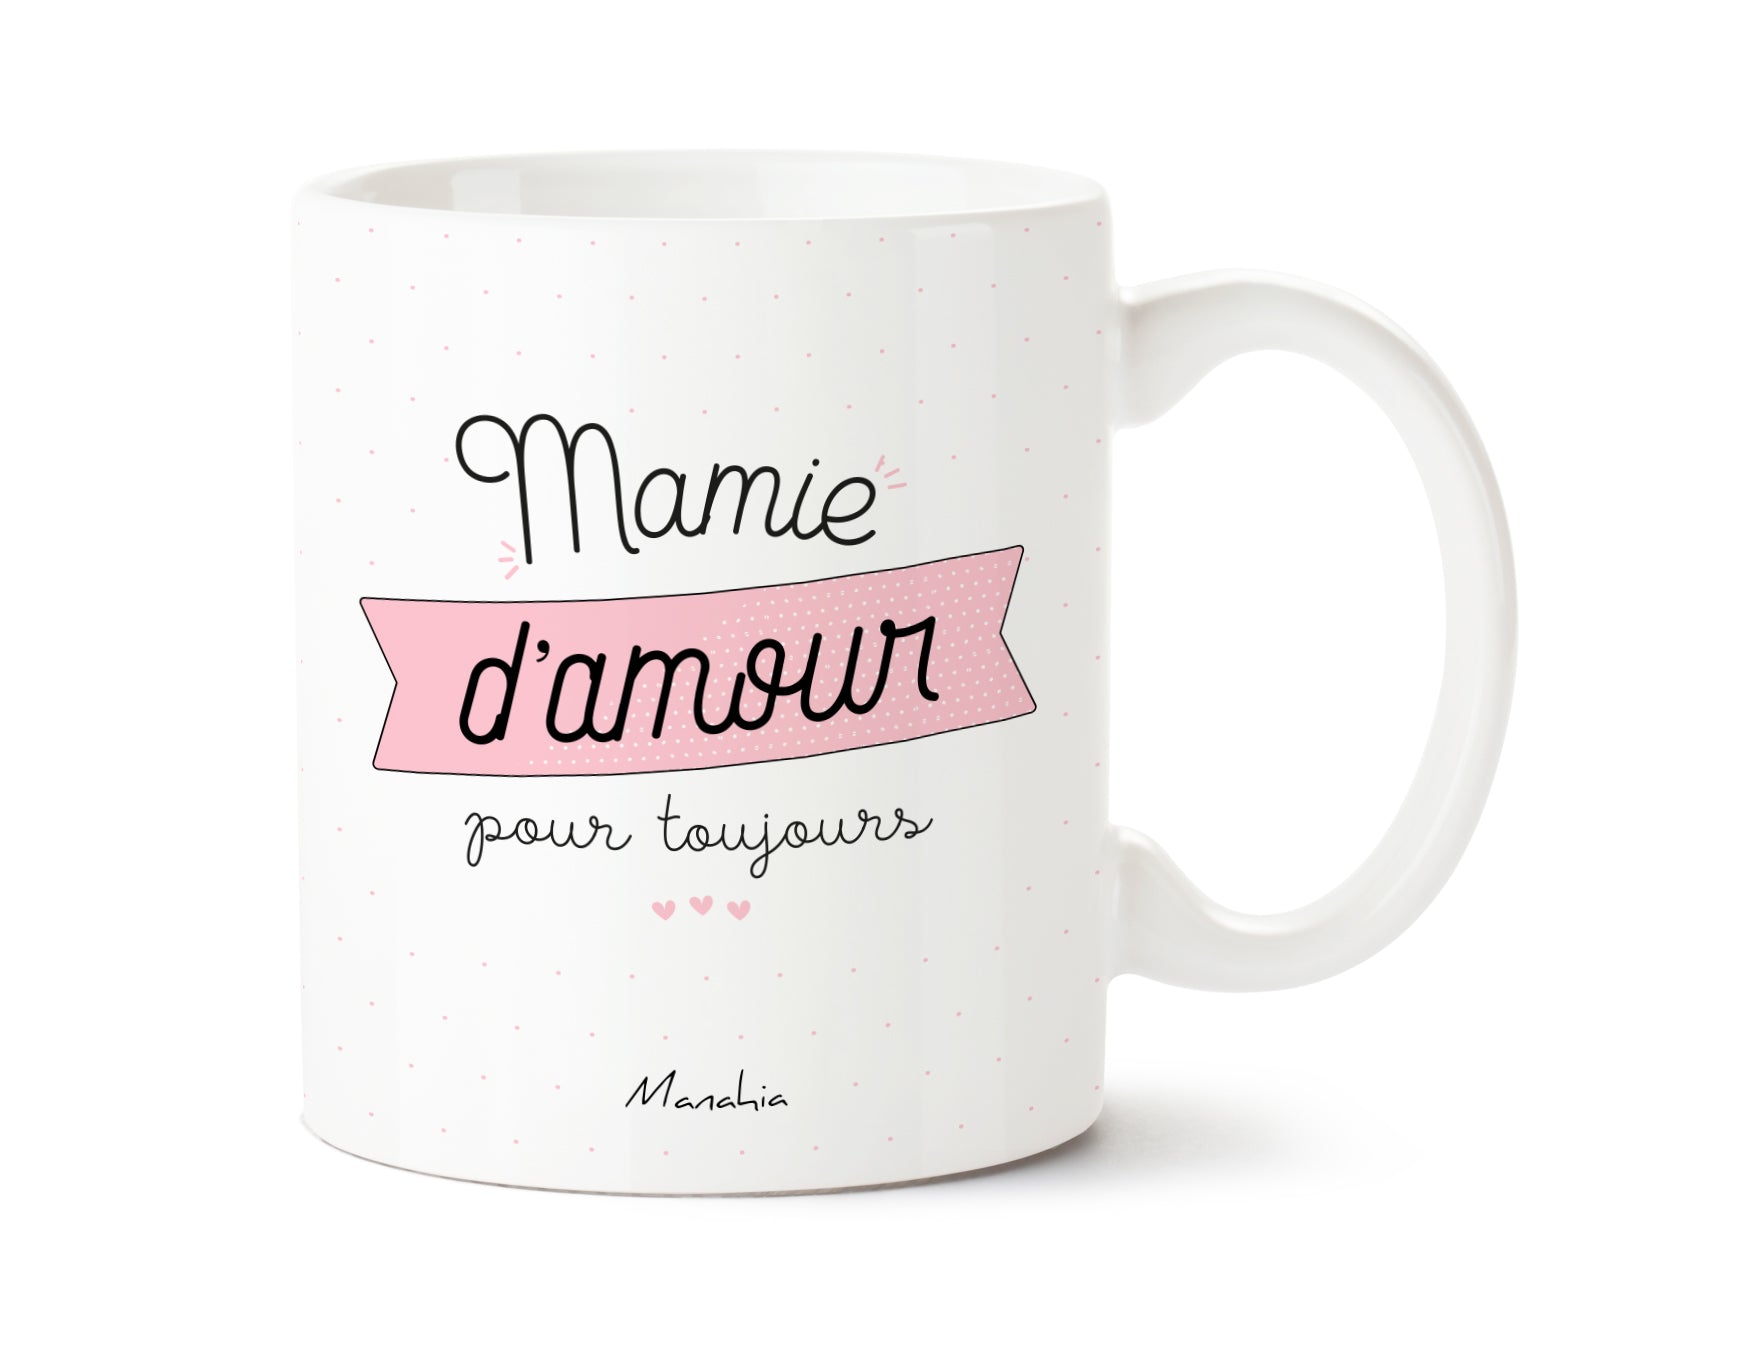 Tasse Surprise Mamie - Fanny, La Boutique